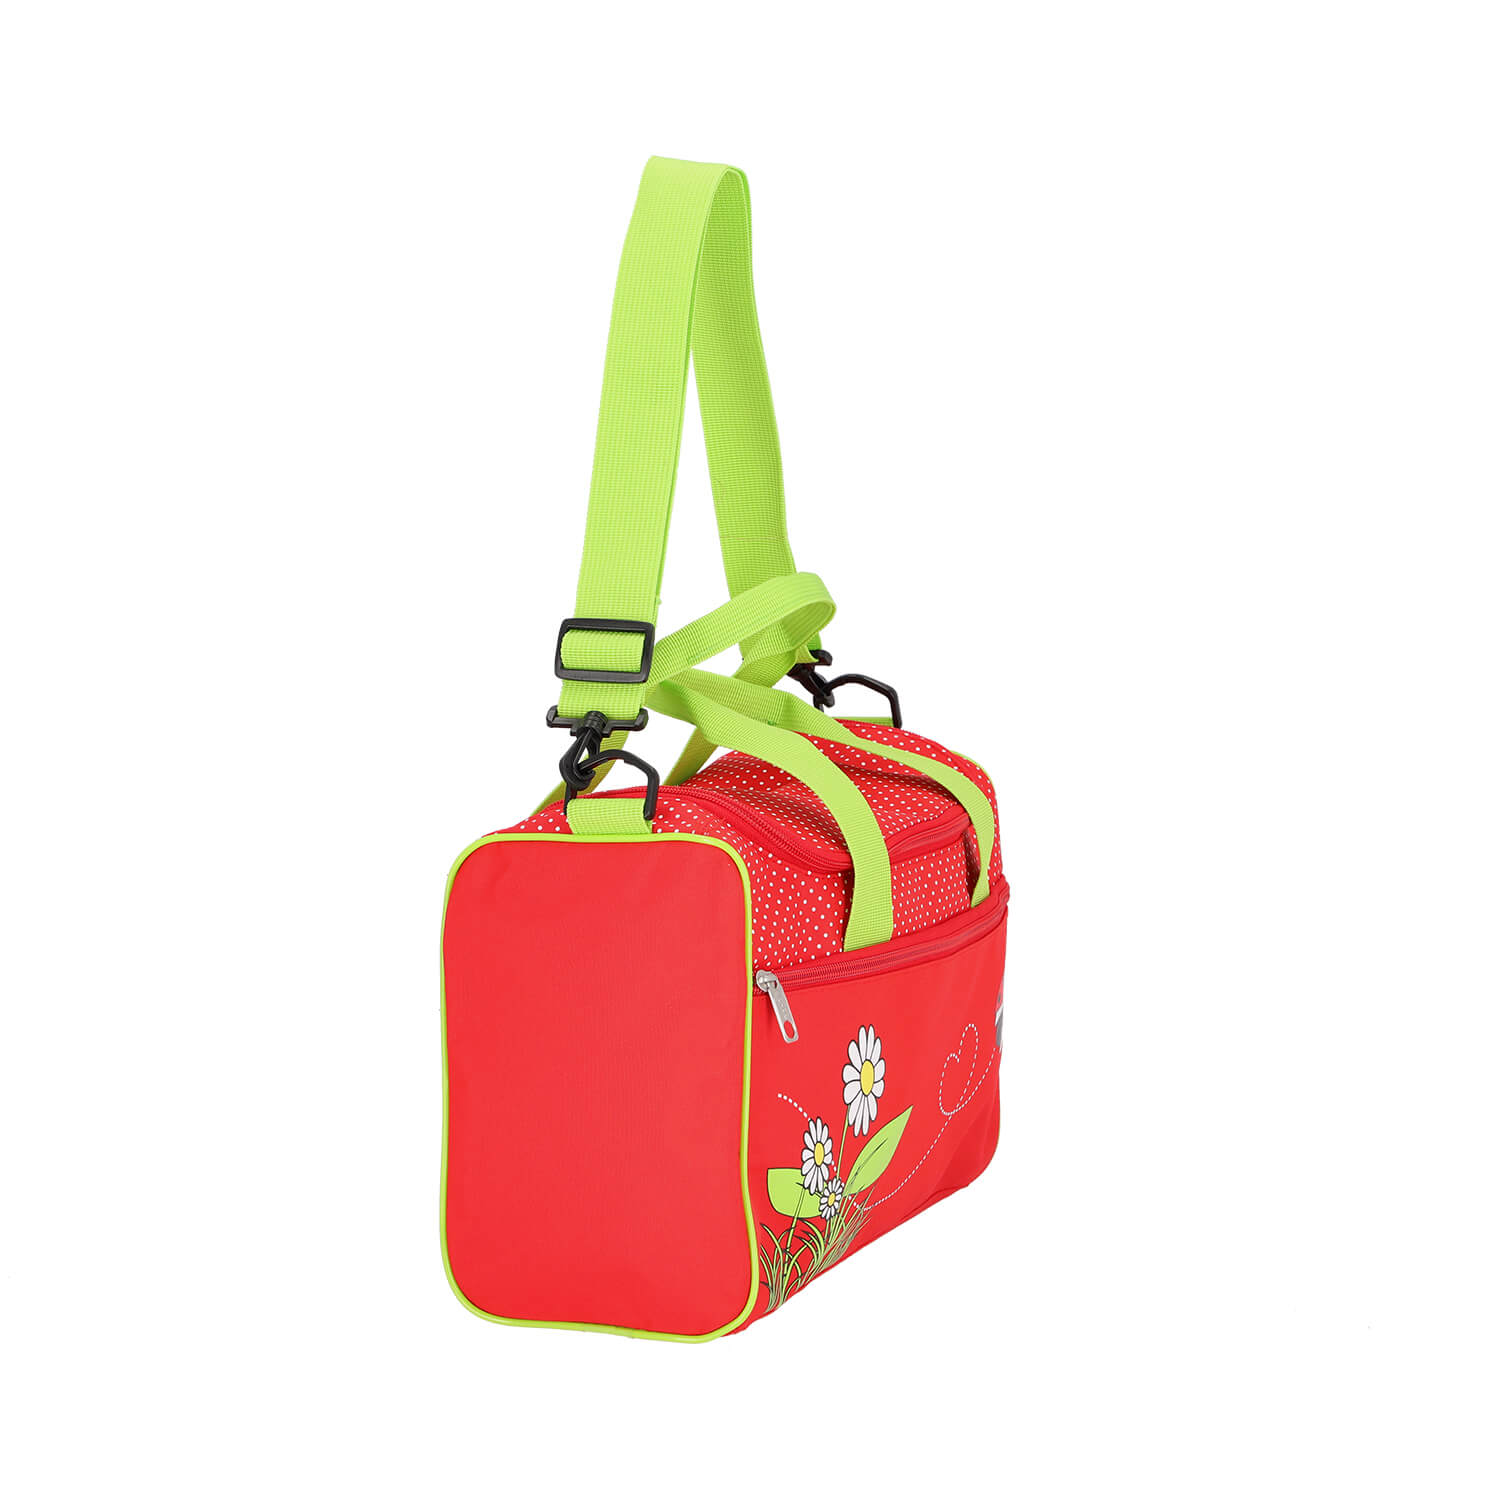 Scooli Sporttasche mit Sweet Beetle Motiv in rot/grün